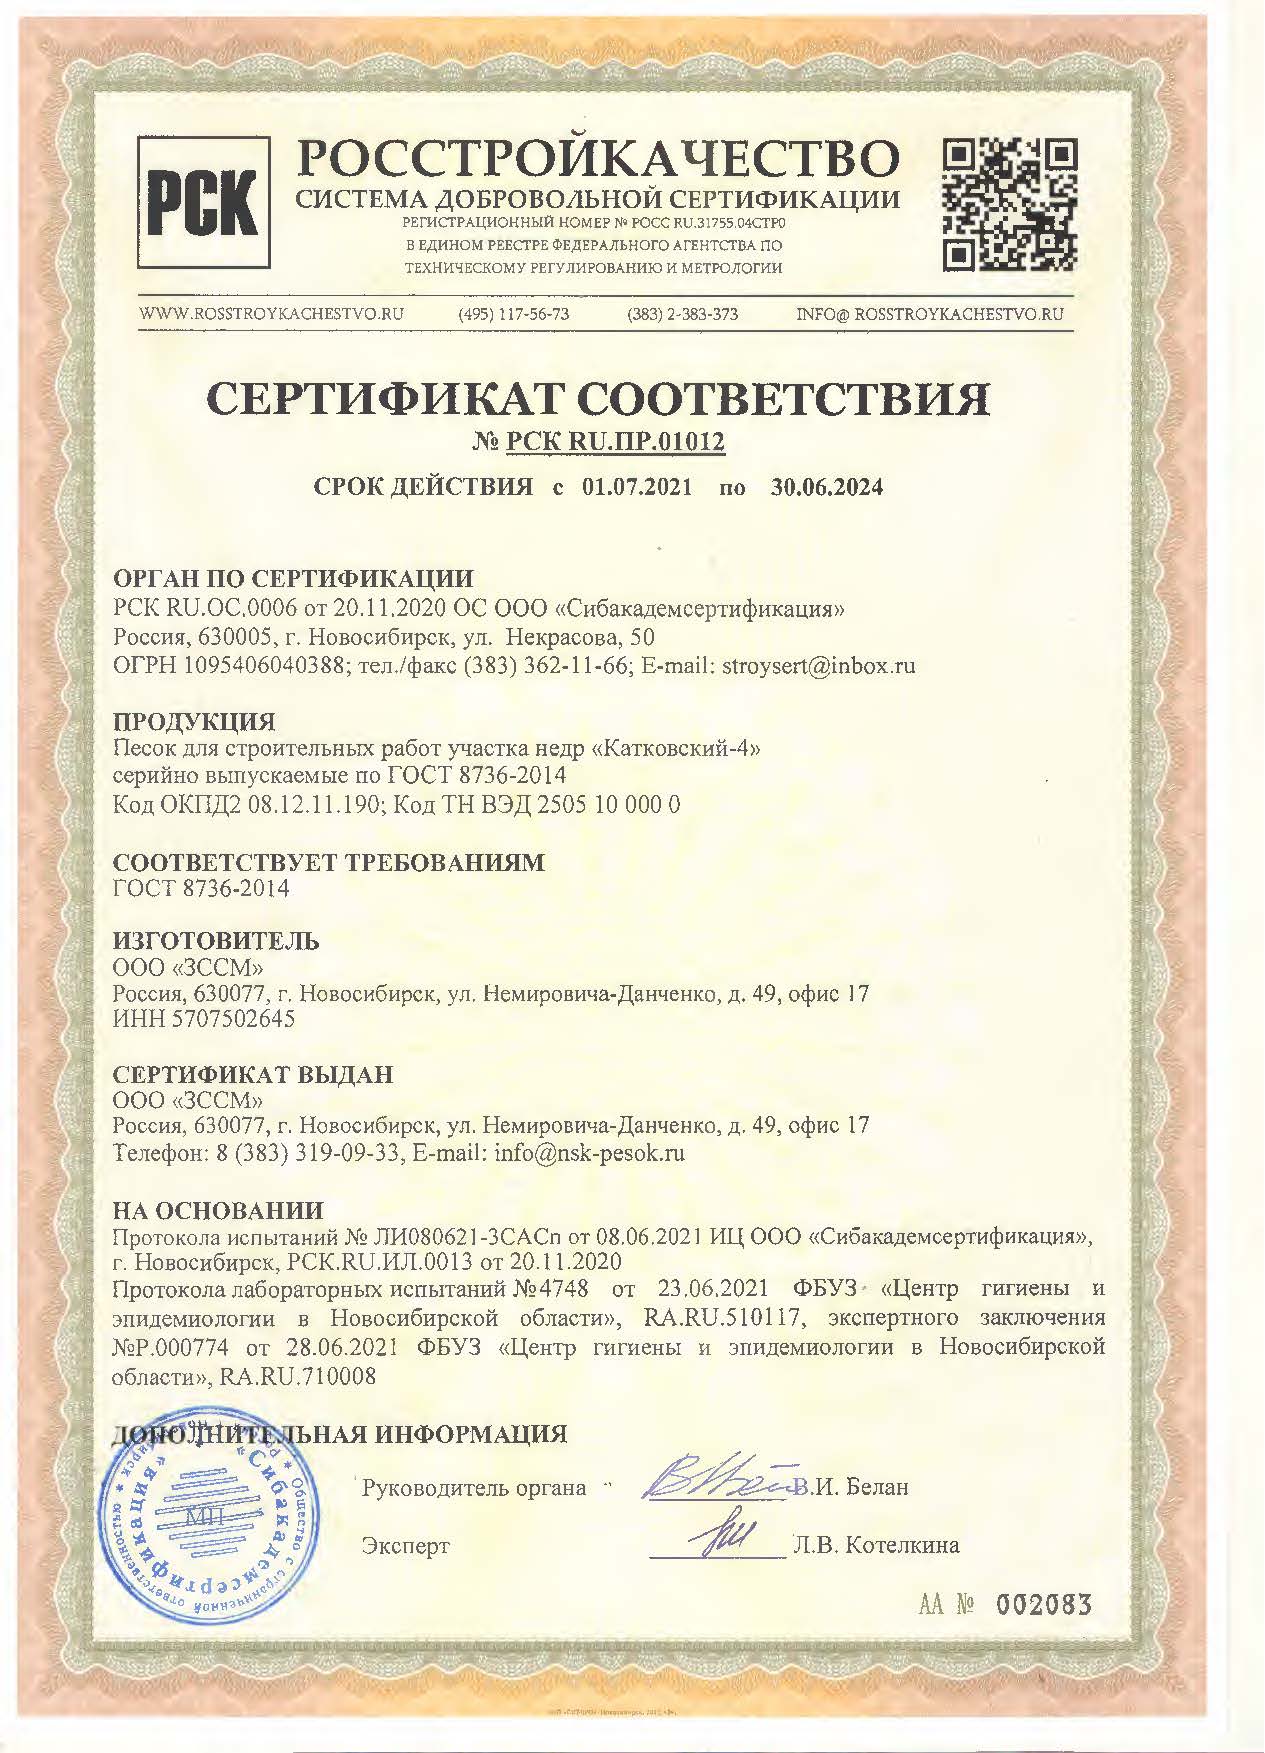 Сертификат соответствия 2021-2024 на песок карьер Катковский-4